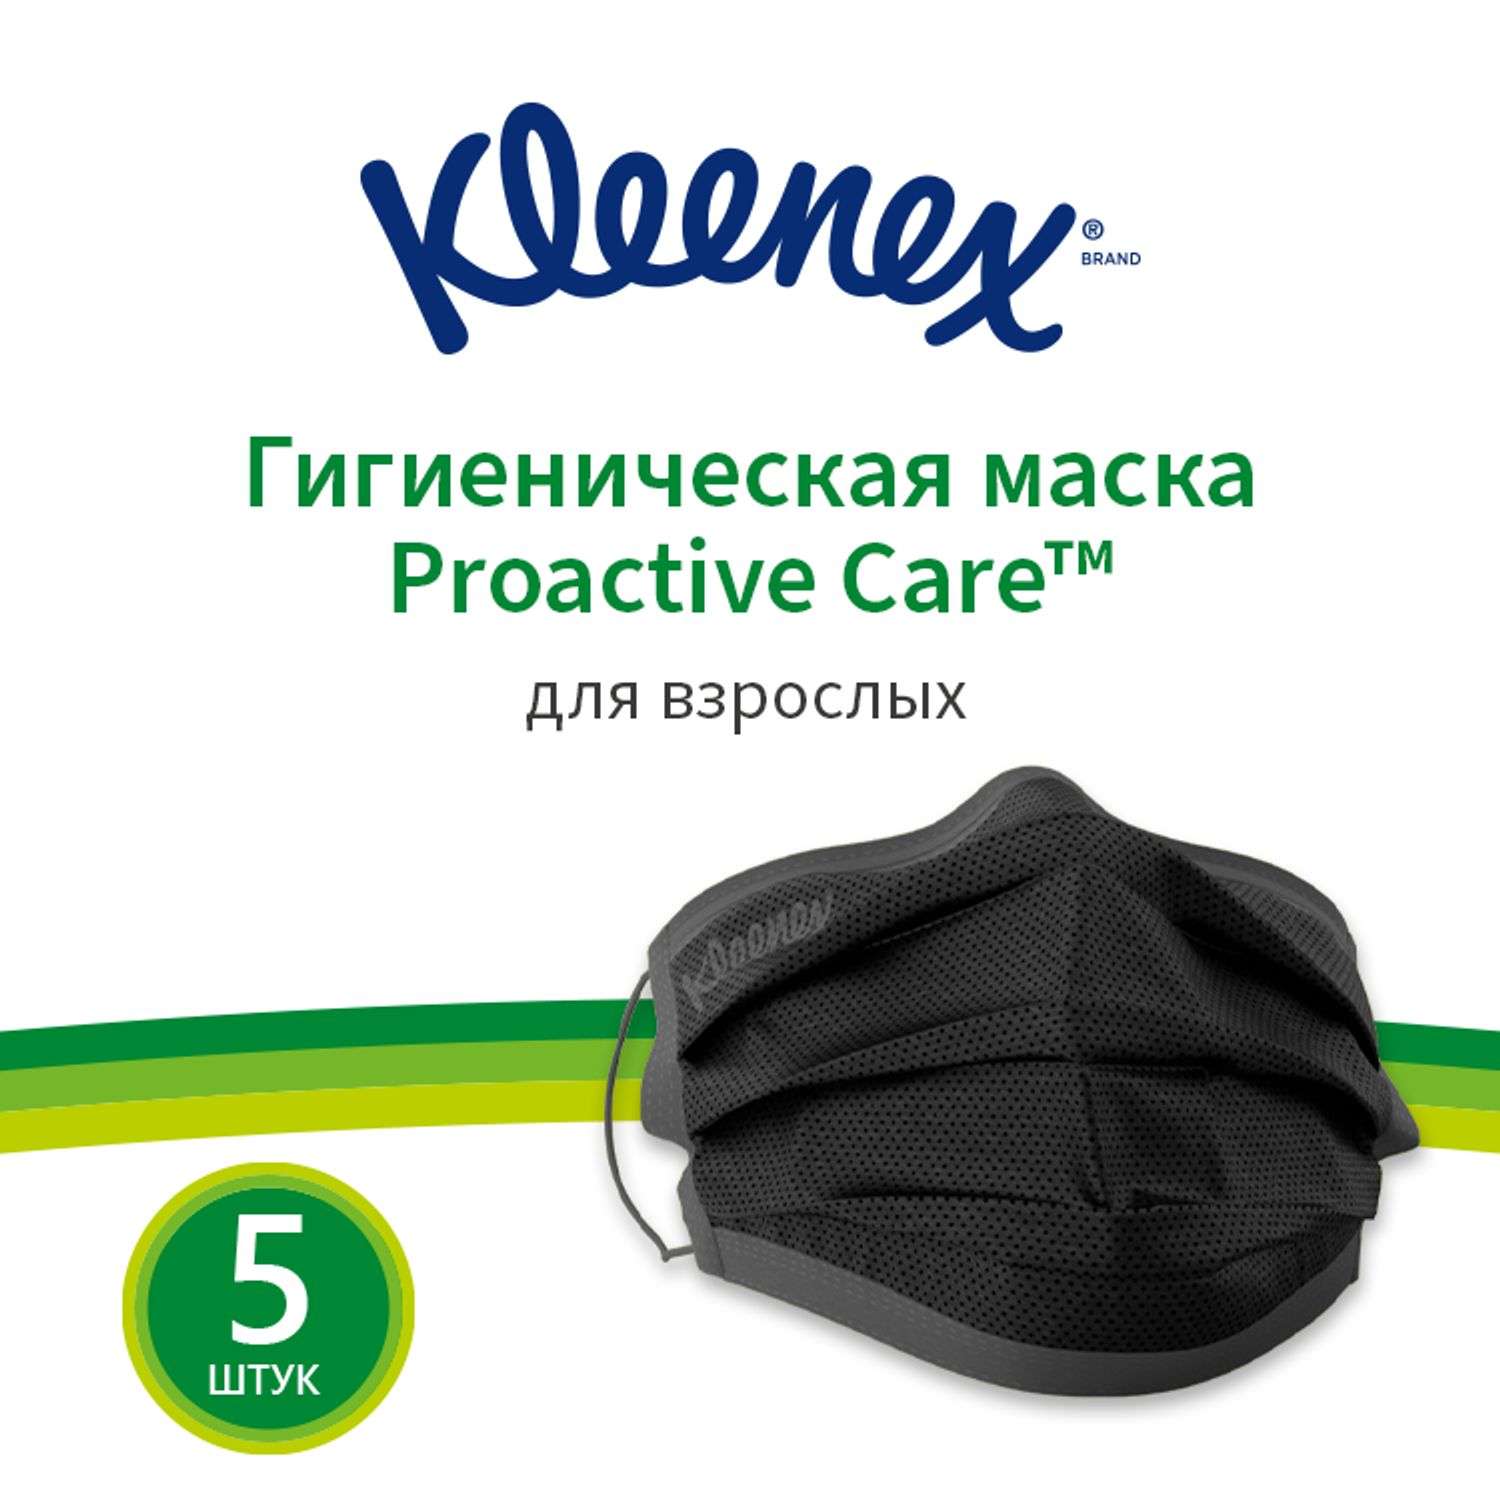 Маска гигиеническая Kleenex для взрослых 5шт 7700910 - фото 6